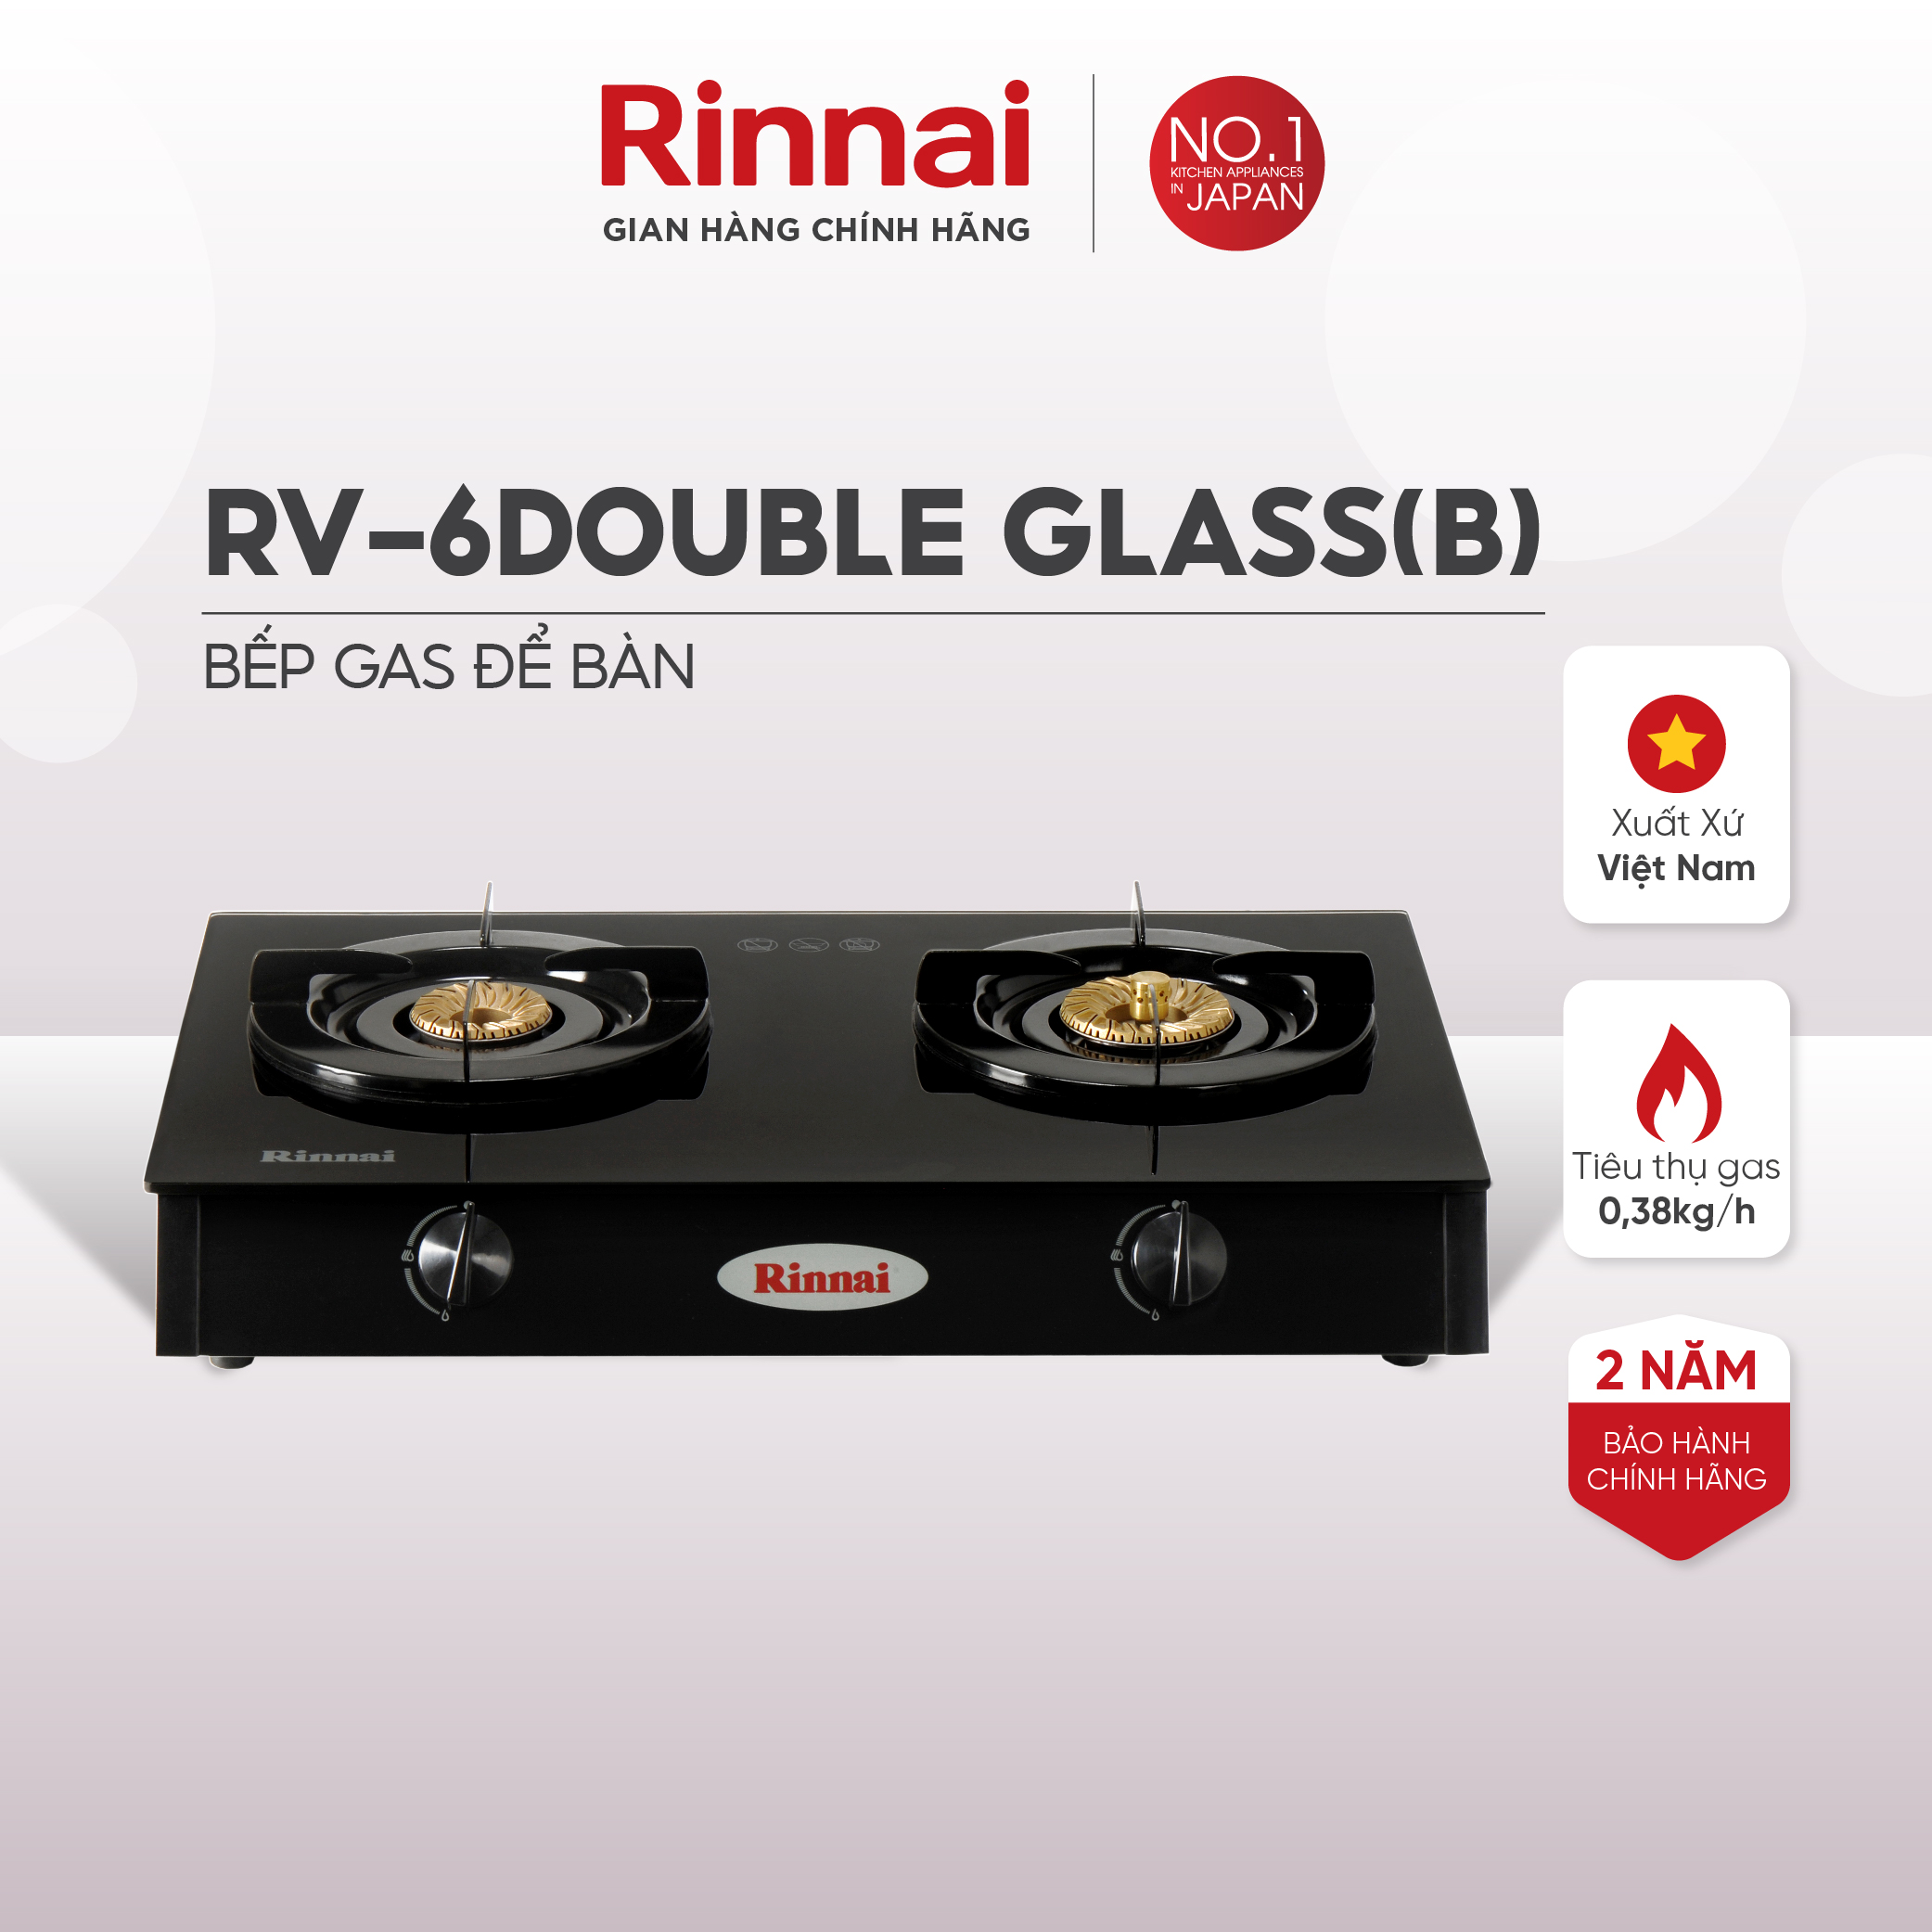 Bếp gas dương Rinnai RV-6Double Glass(Sp) mặt bếp kính và kiềng bếp men - Hàng chính hãng.